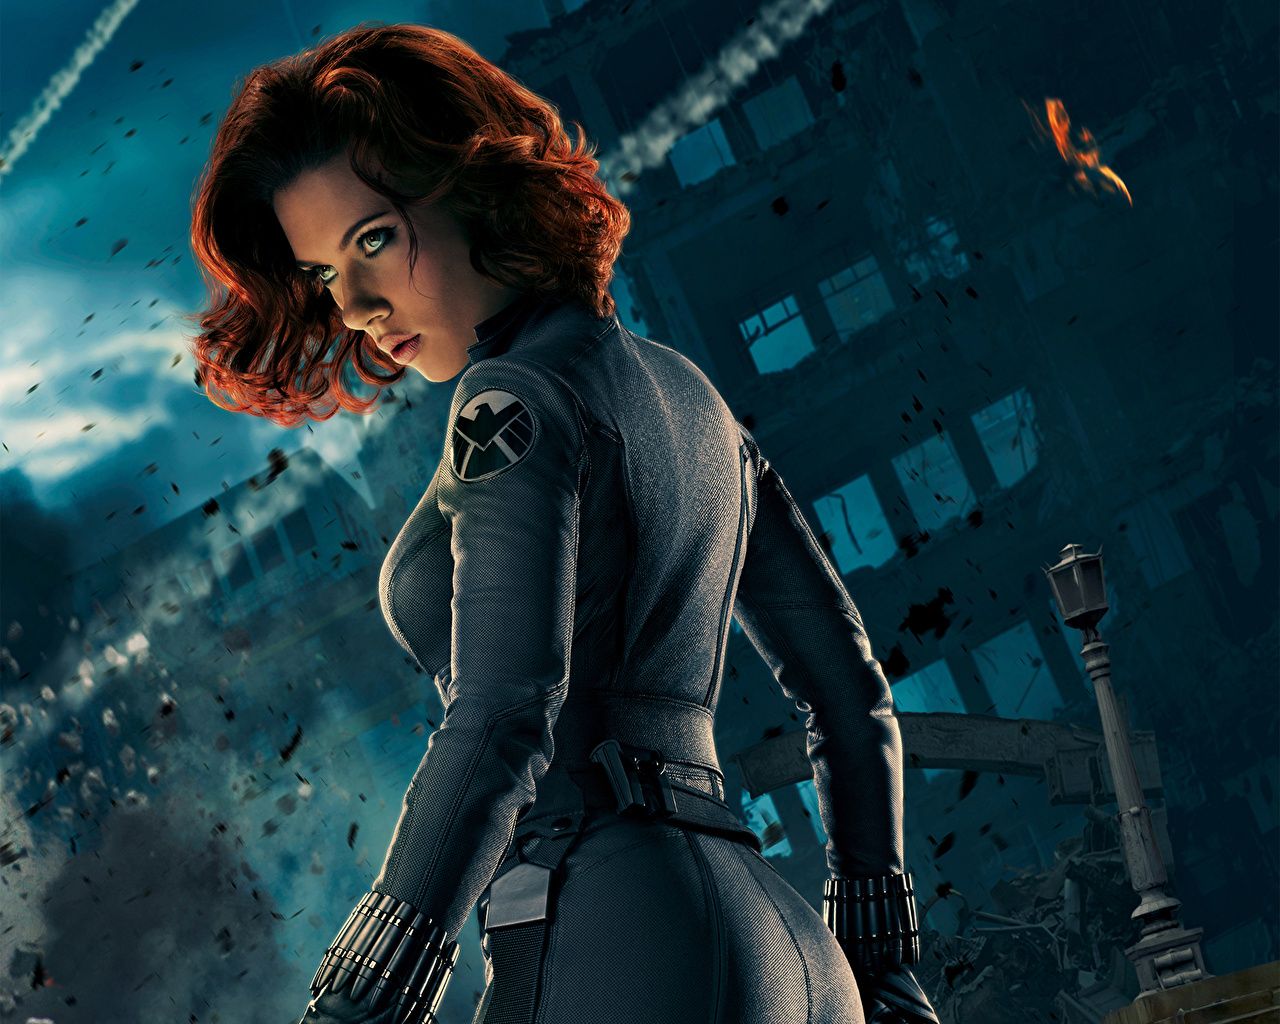 image The Avengers (2012 film) Scarlett Johansson Redhead girl